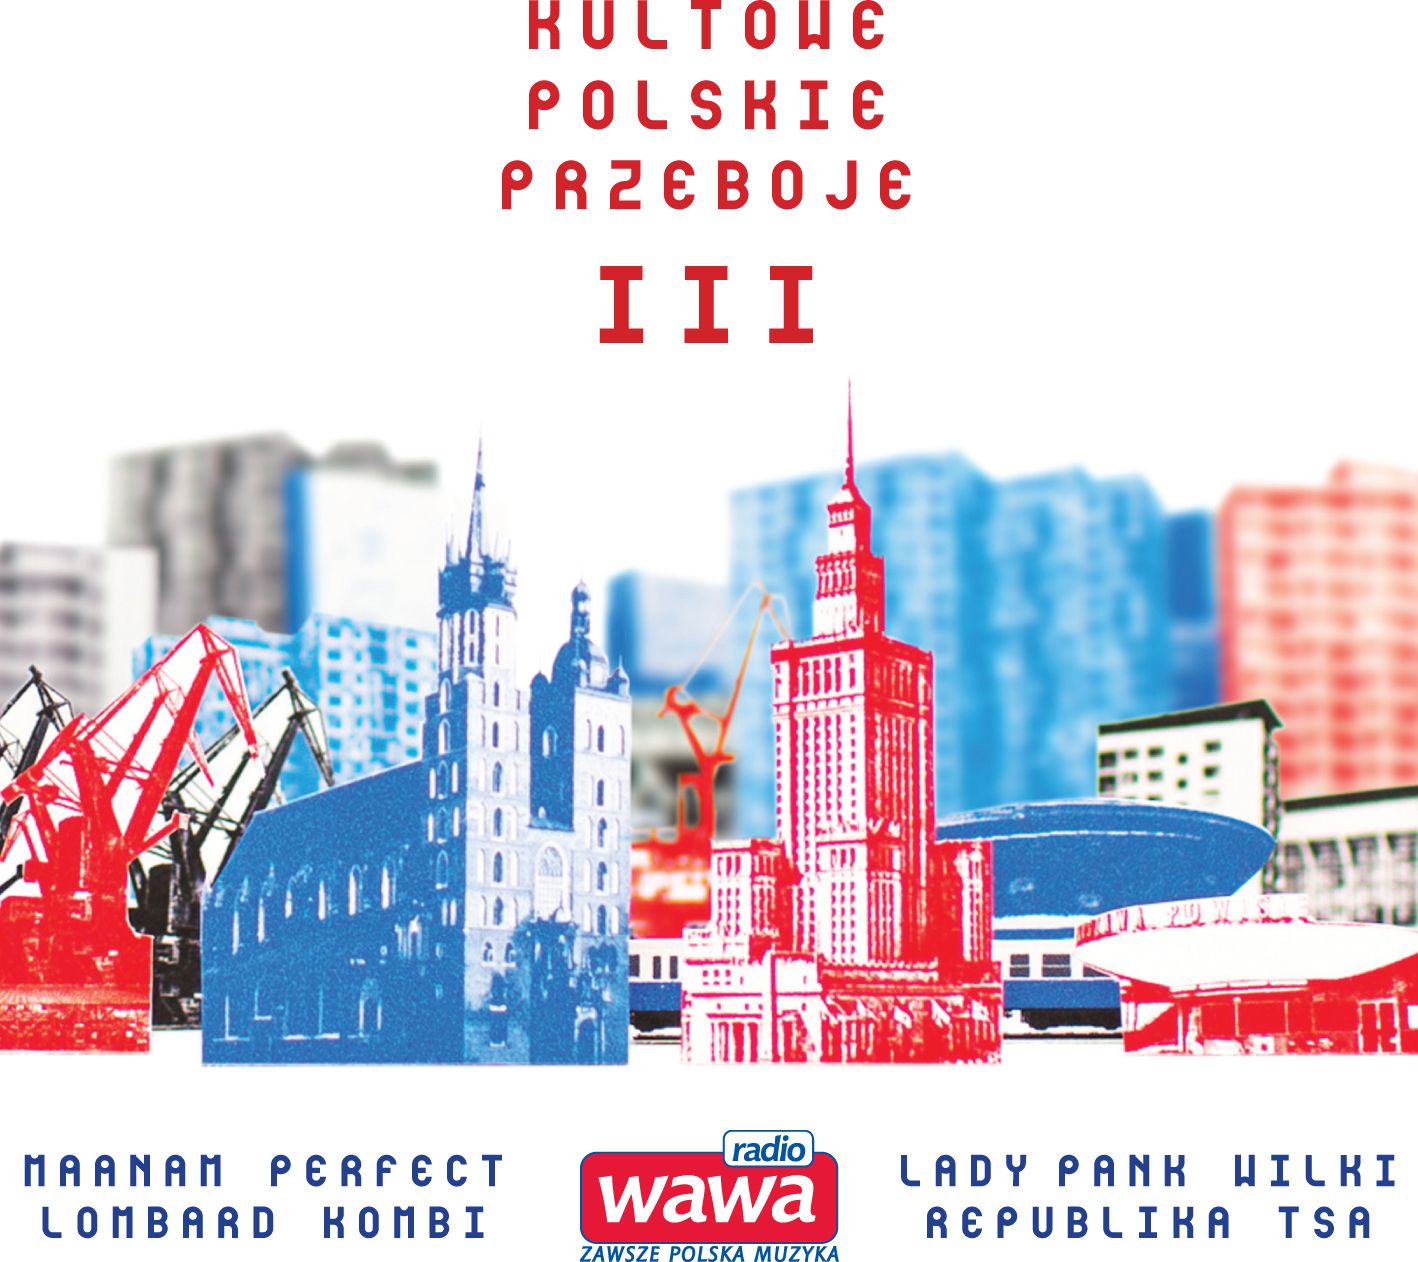 V/A - Radio Wawa - Kultowe Polskie Przeboje Iii 420725 (5906409902745)